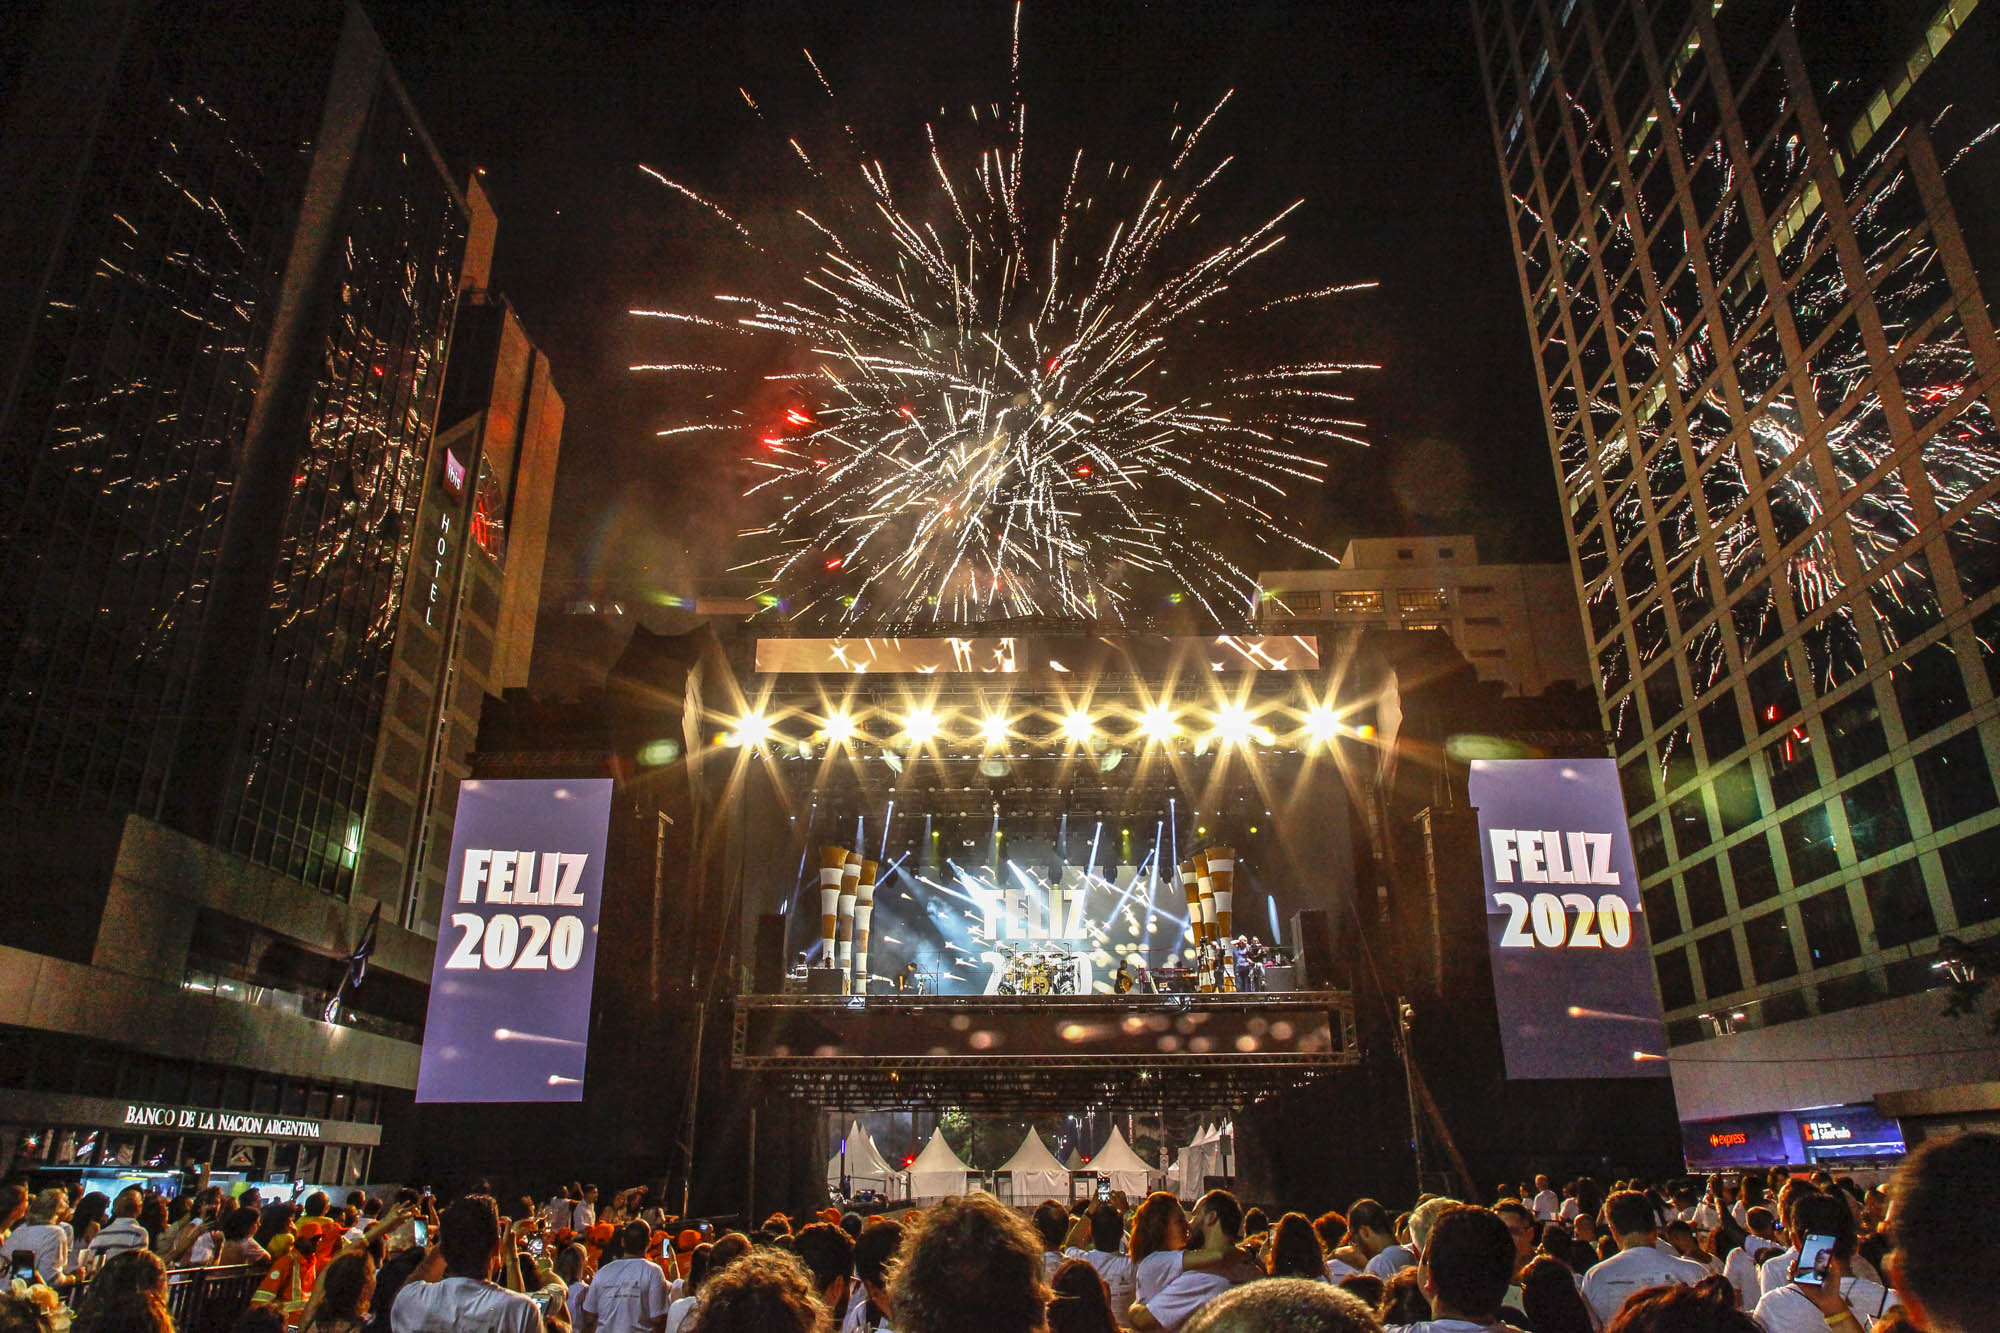 Foto do palco com fogos e escrito Feliz 2020